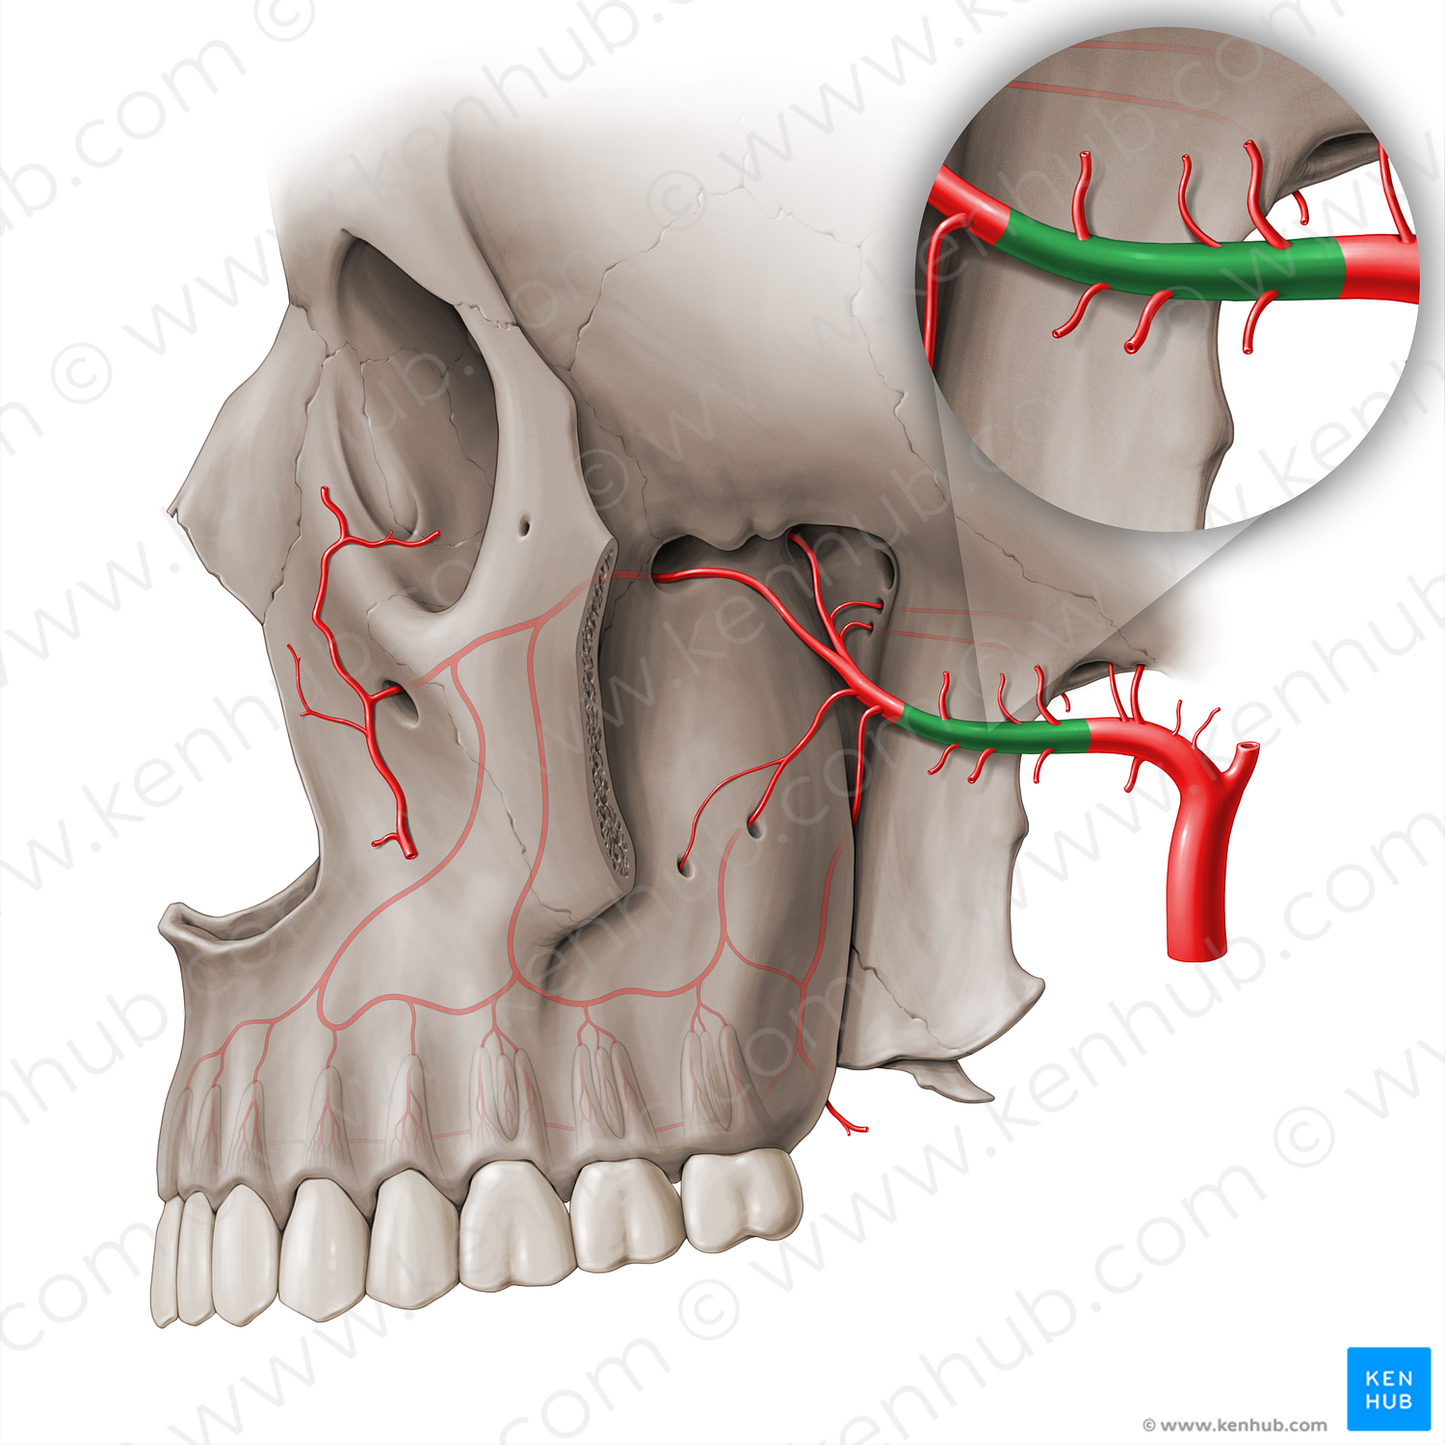 Pterygoid part of maxillary artery (#18508)